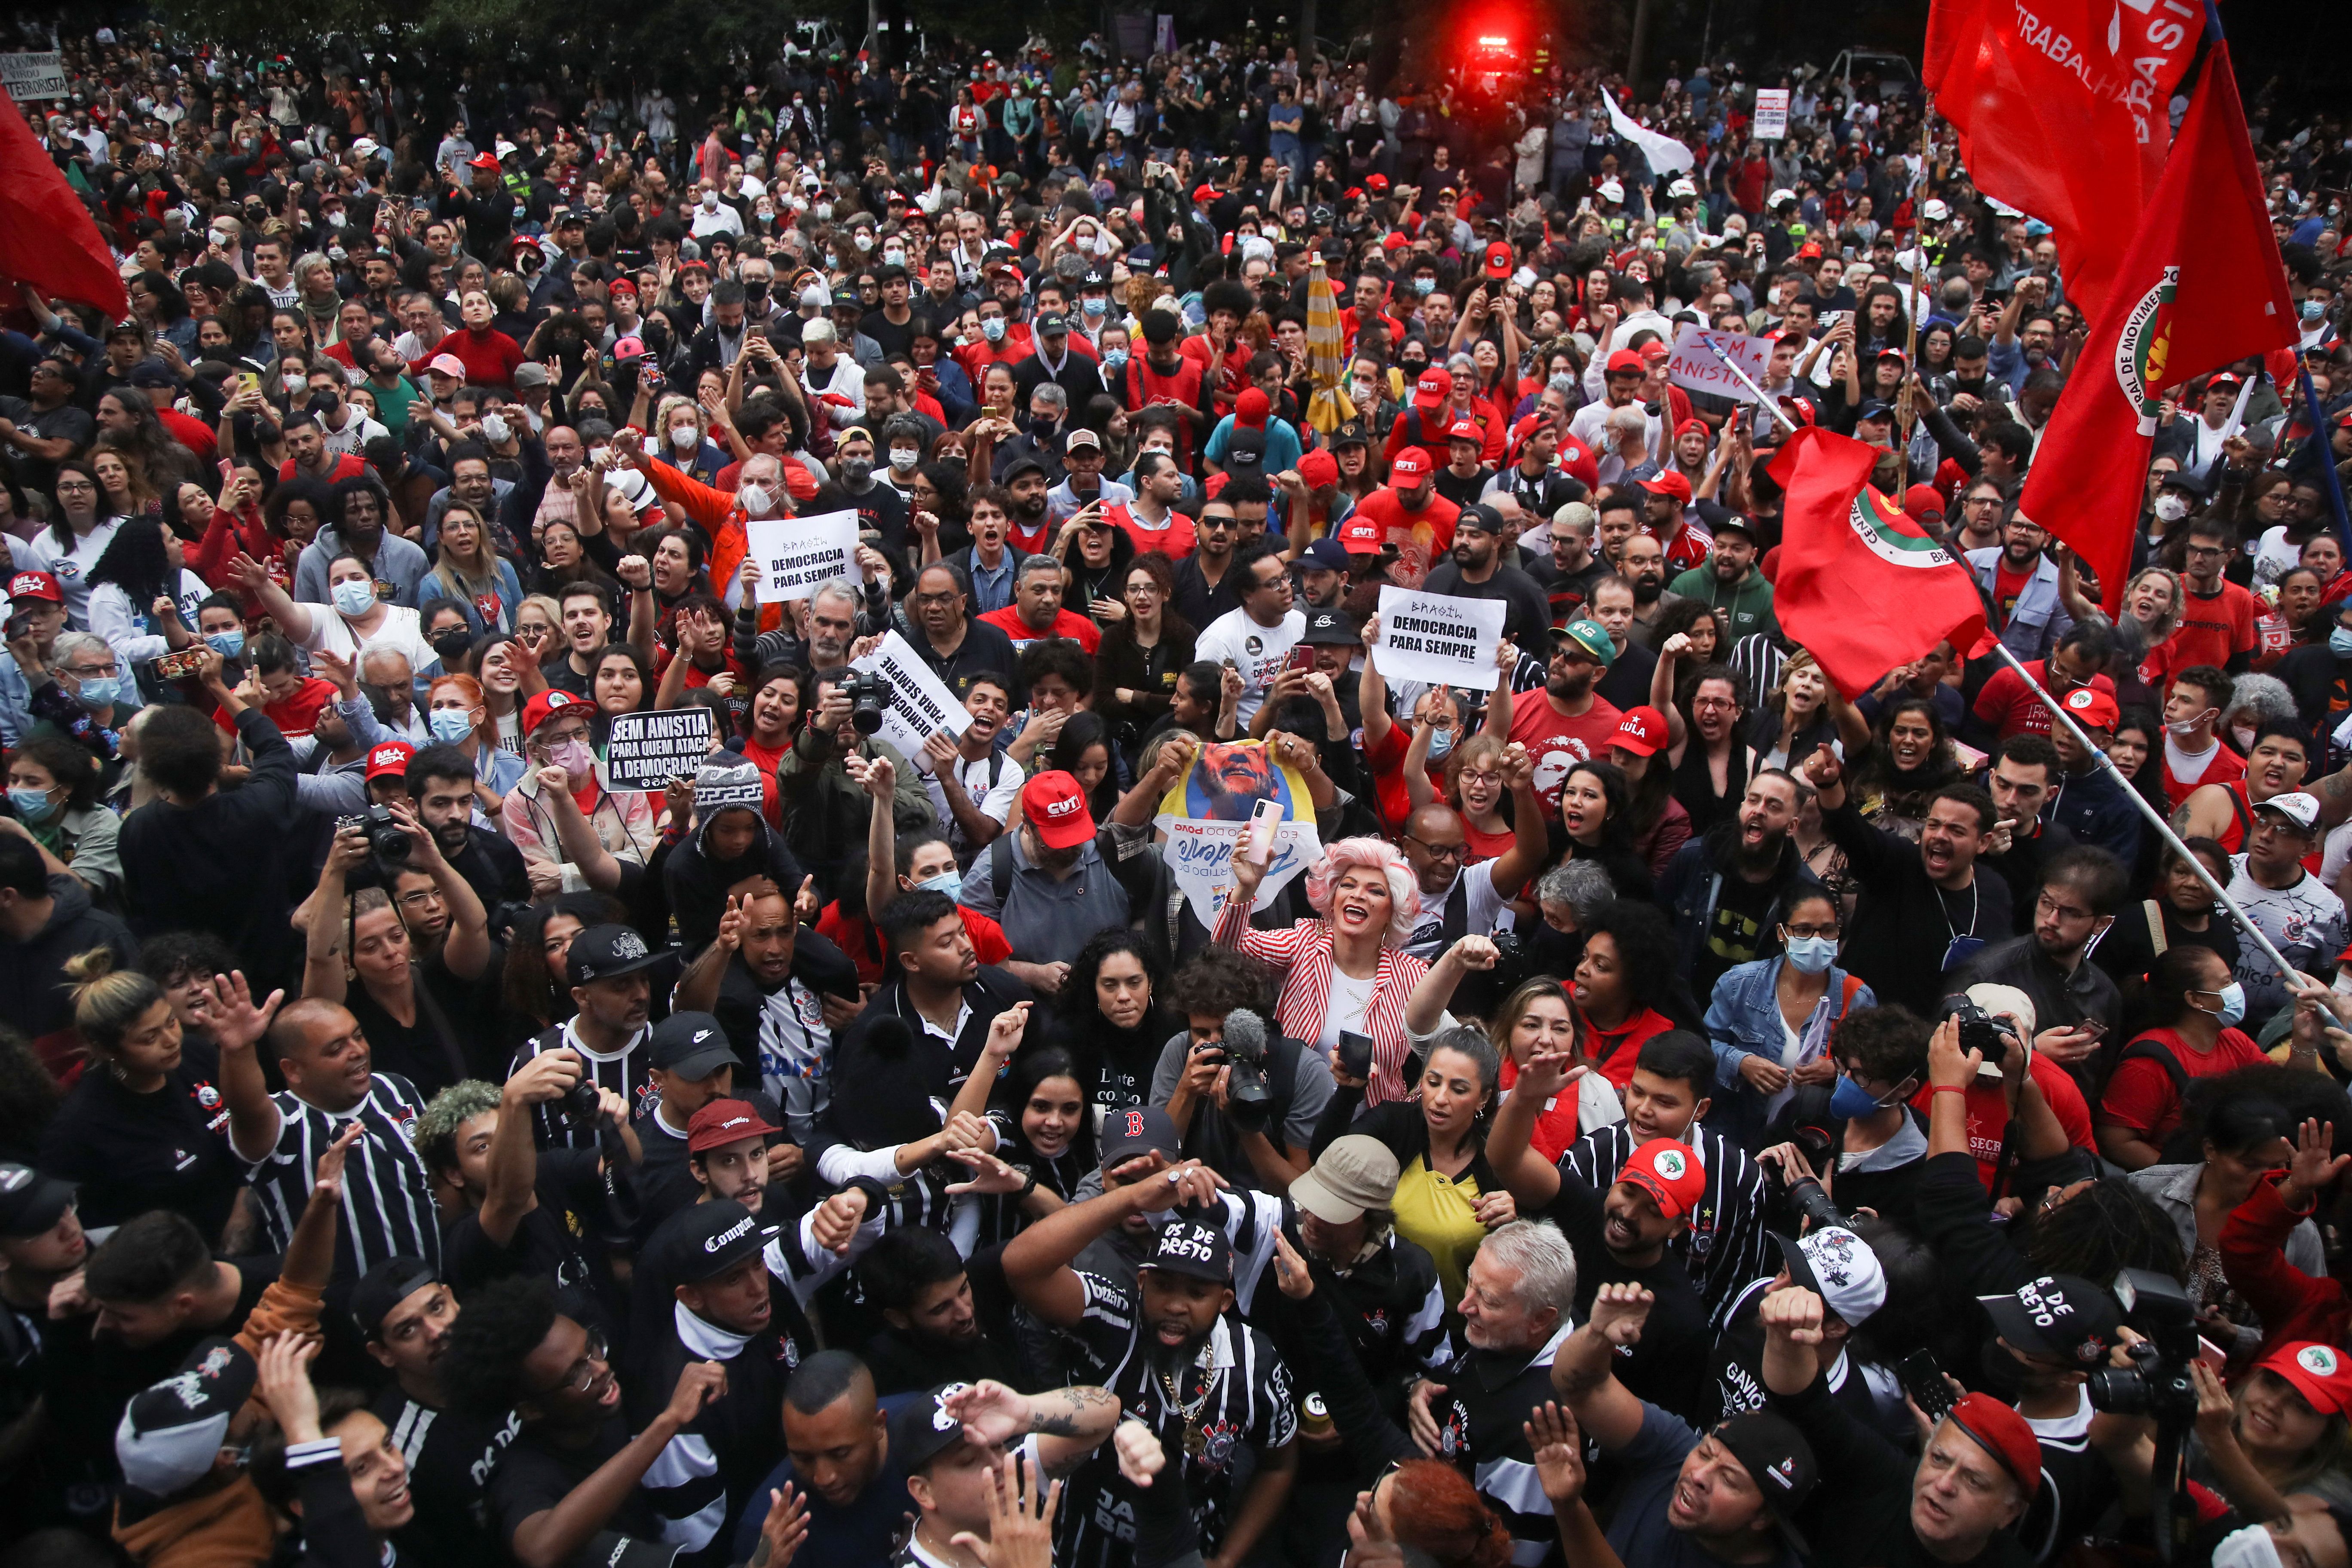 Demonstrators take part in a protest against anti-democratic riots and in support of Brazil's President Luiz Inacio Lula da Silva, in Sao Paulo, Brazil.